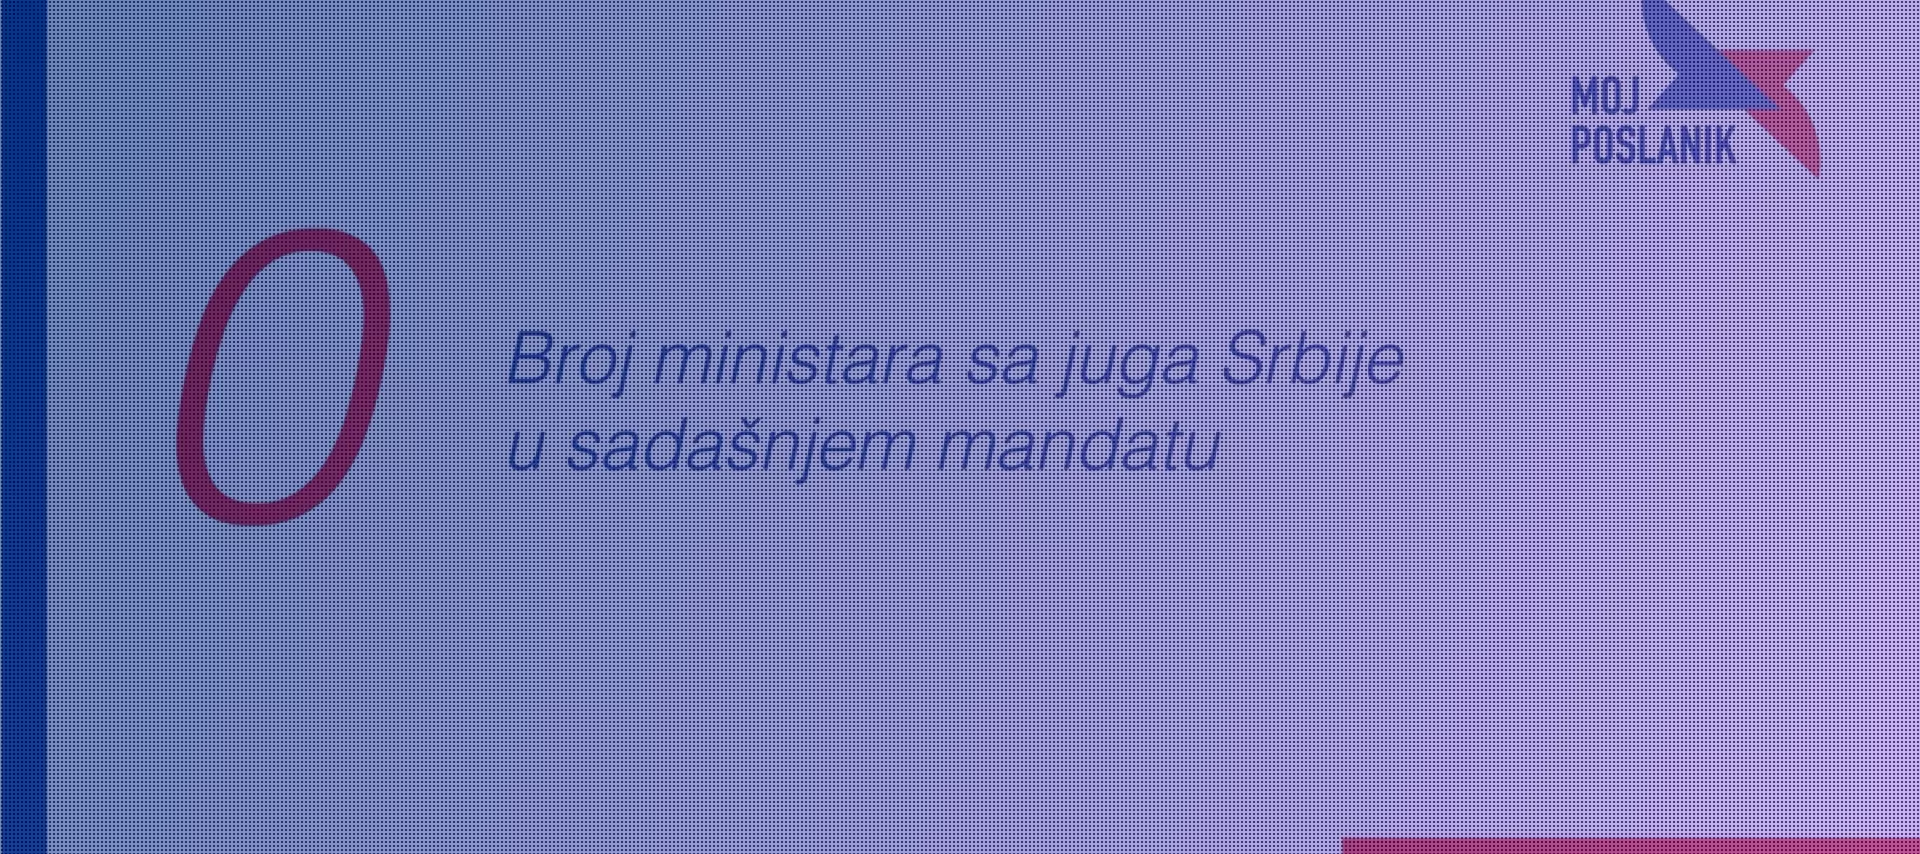 Да ли је Влади Србије потребан министар са југа Србије?